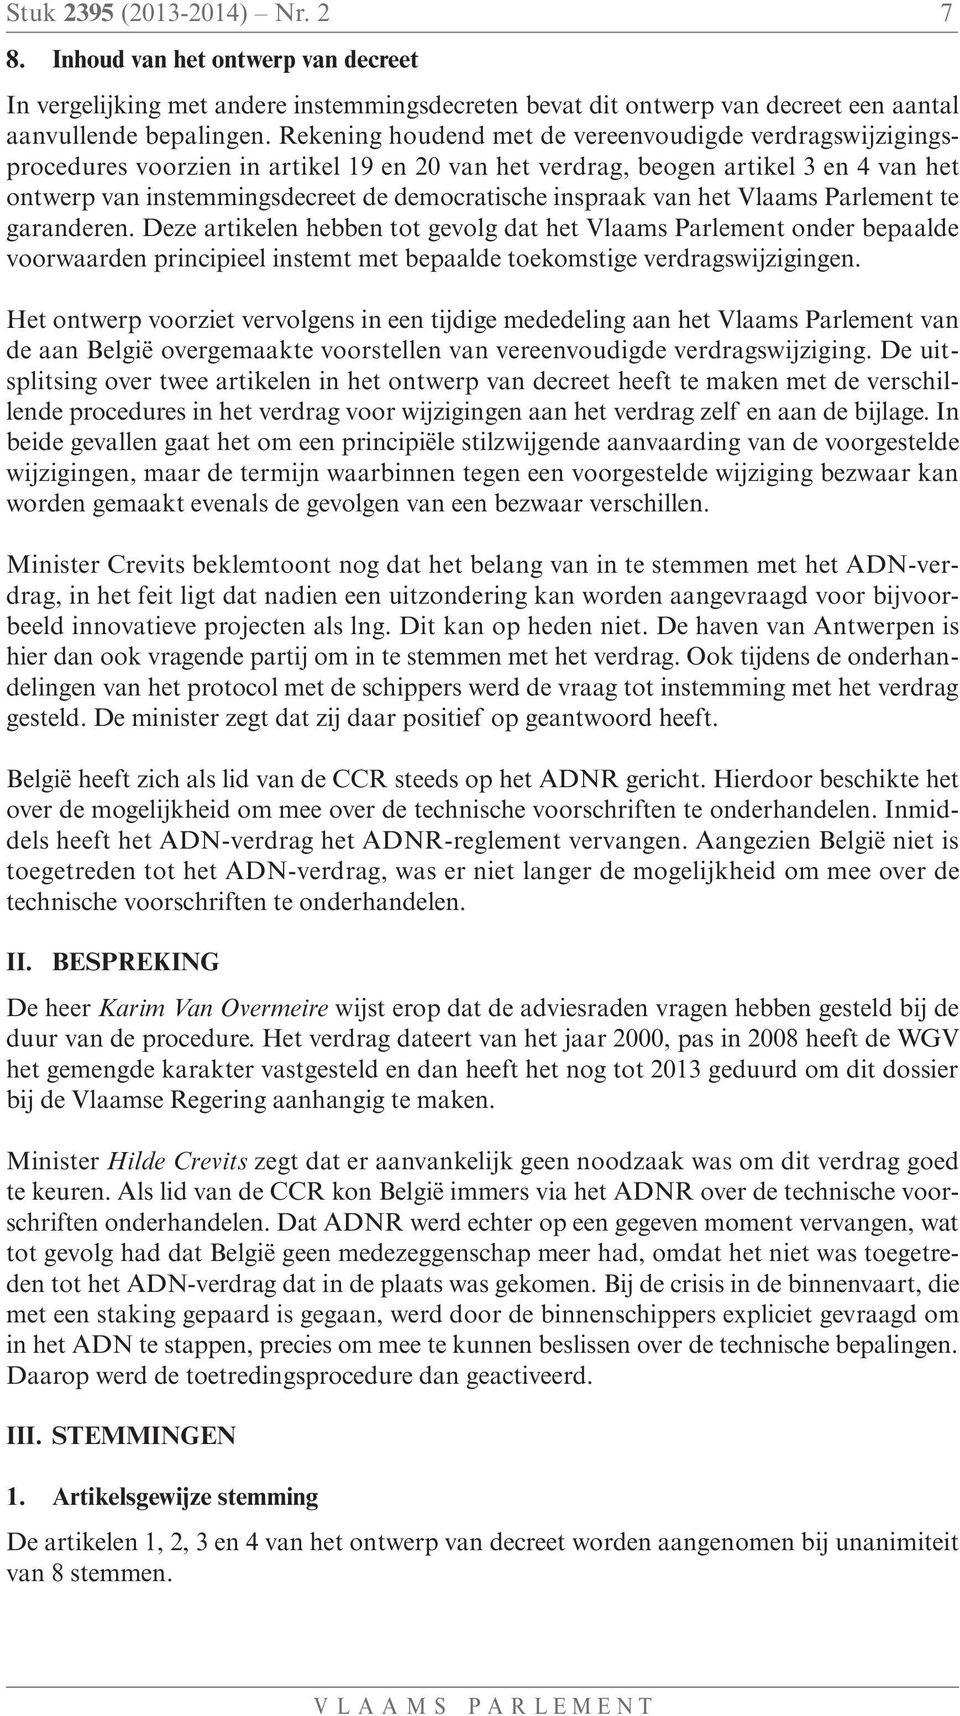 inspraak van het Vlaams Parlement te garanderen. Deze artikelen hebben tot gevolg dat het Vlaams Parlement onder bepaalde voorwaarden principieel instemt met bepaalde toekomstige verdragswijzigingen.